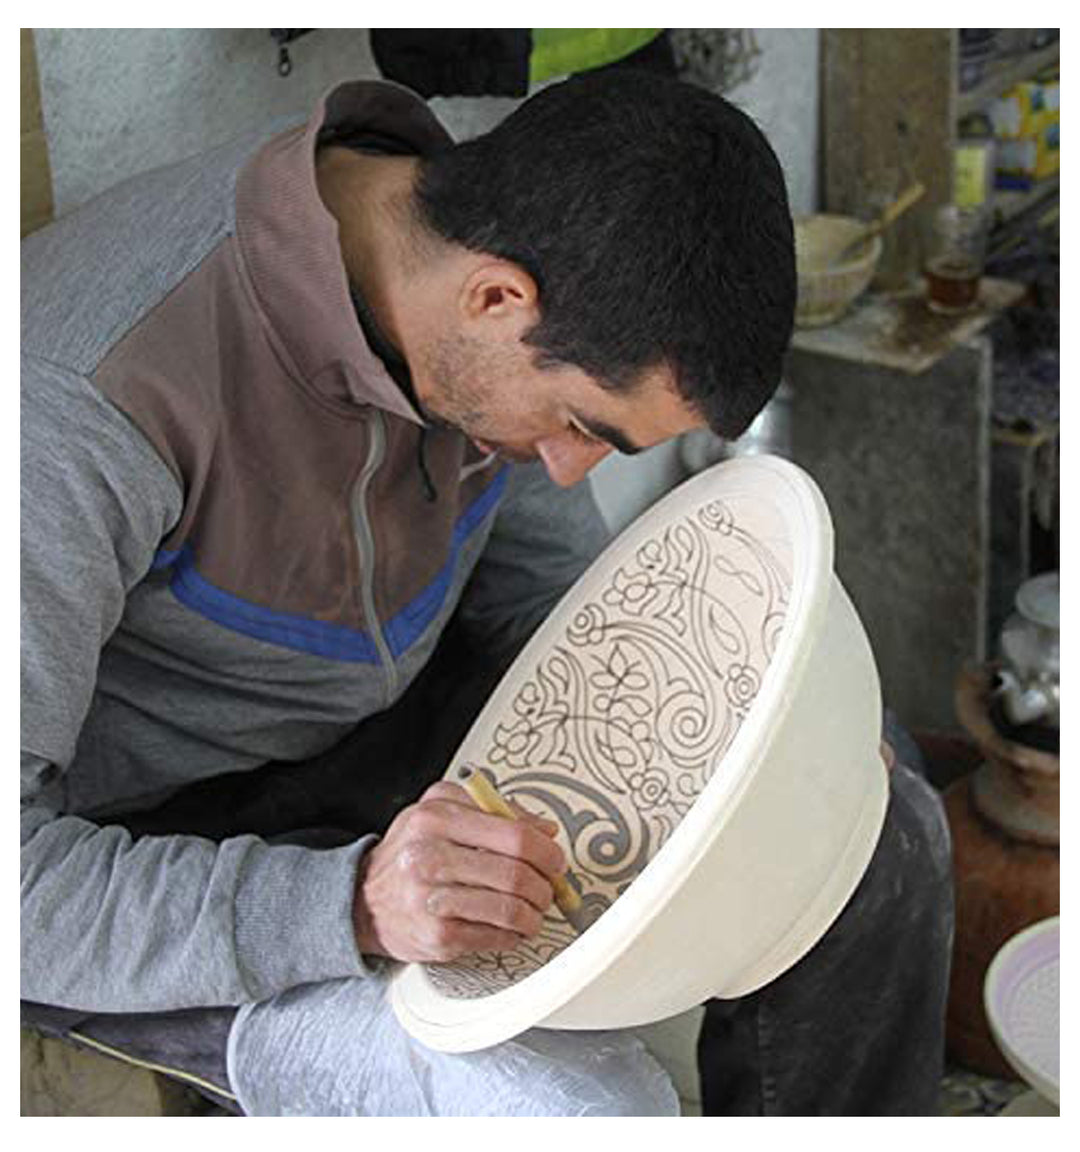 Orientalisches-Handbemaltes-Keramik-Waschbecken Fes44